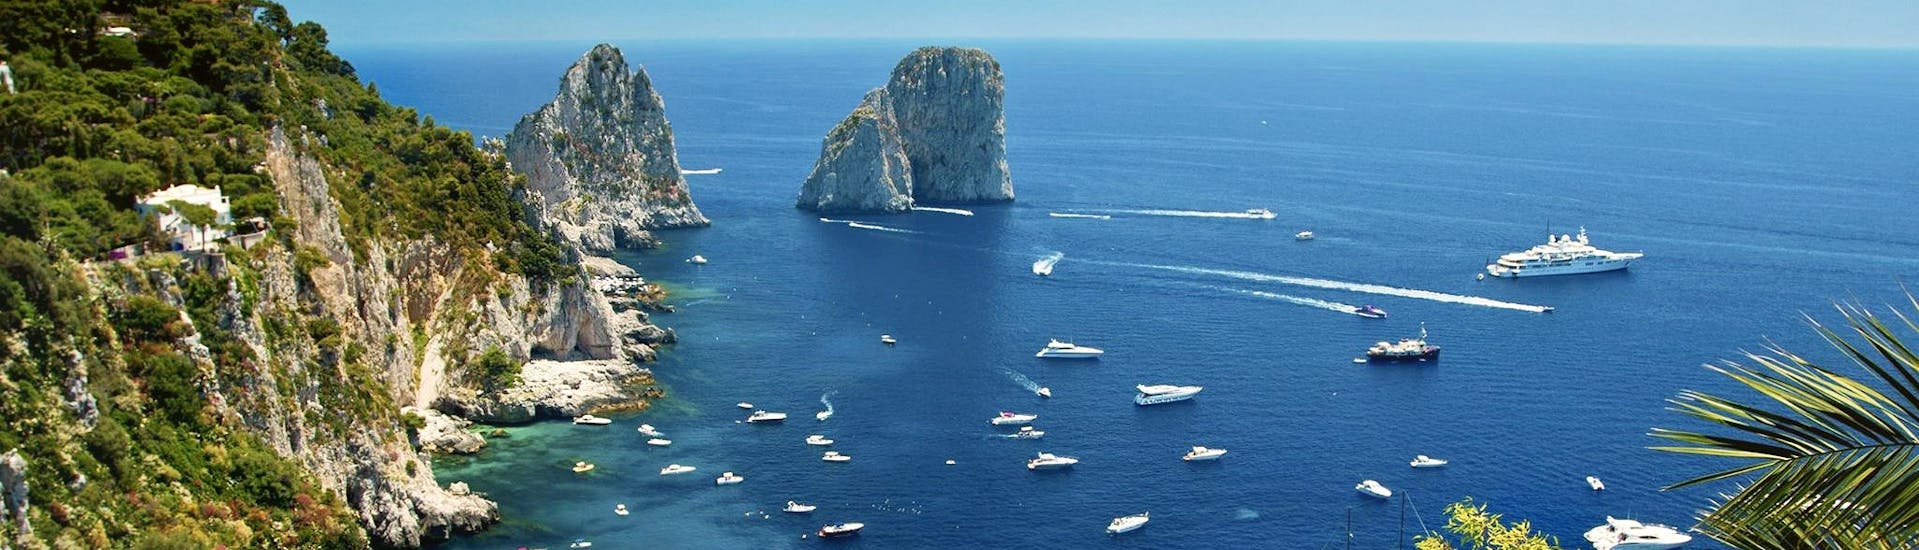 Vue panoramique des Faraglioni vue pendant la Balade en bateau autour de Capri & Visite guidée de l'île avec HP Travel.